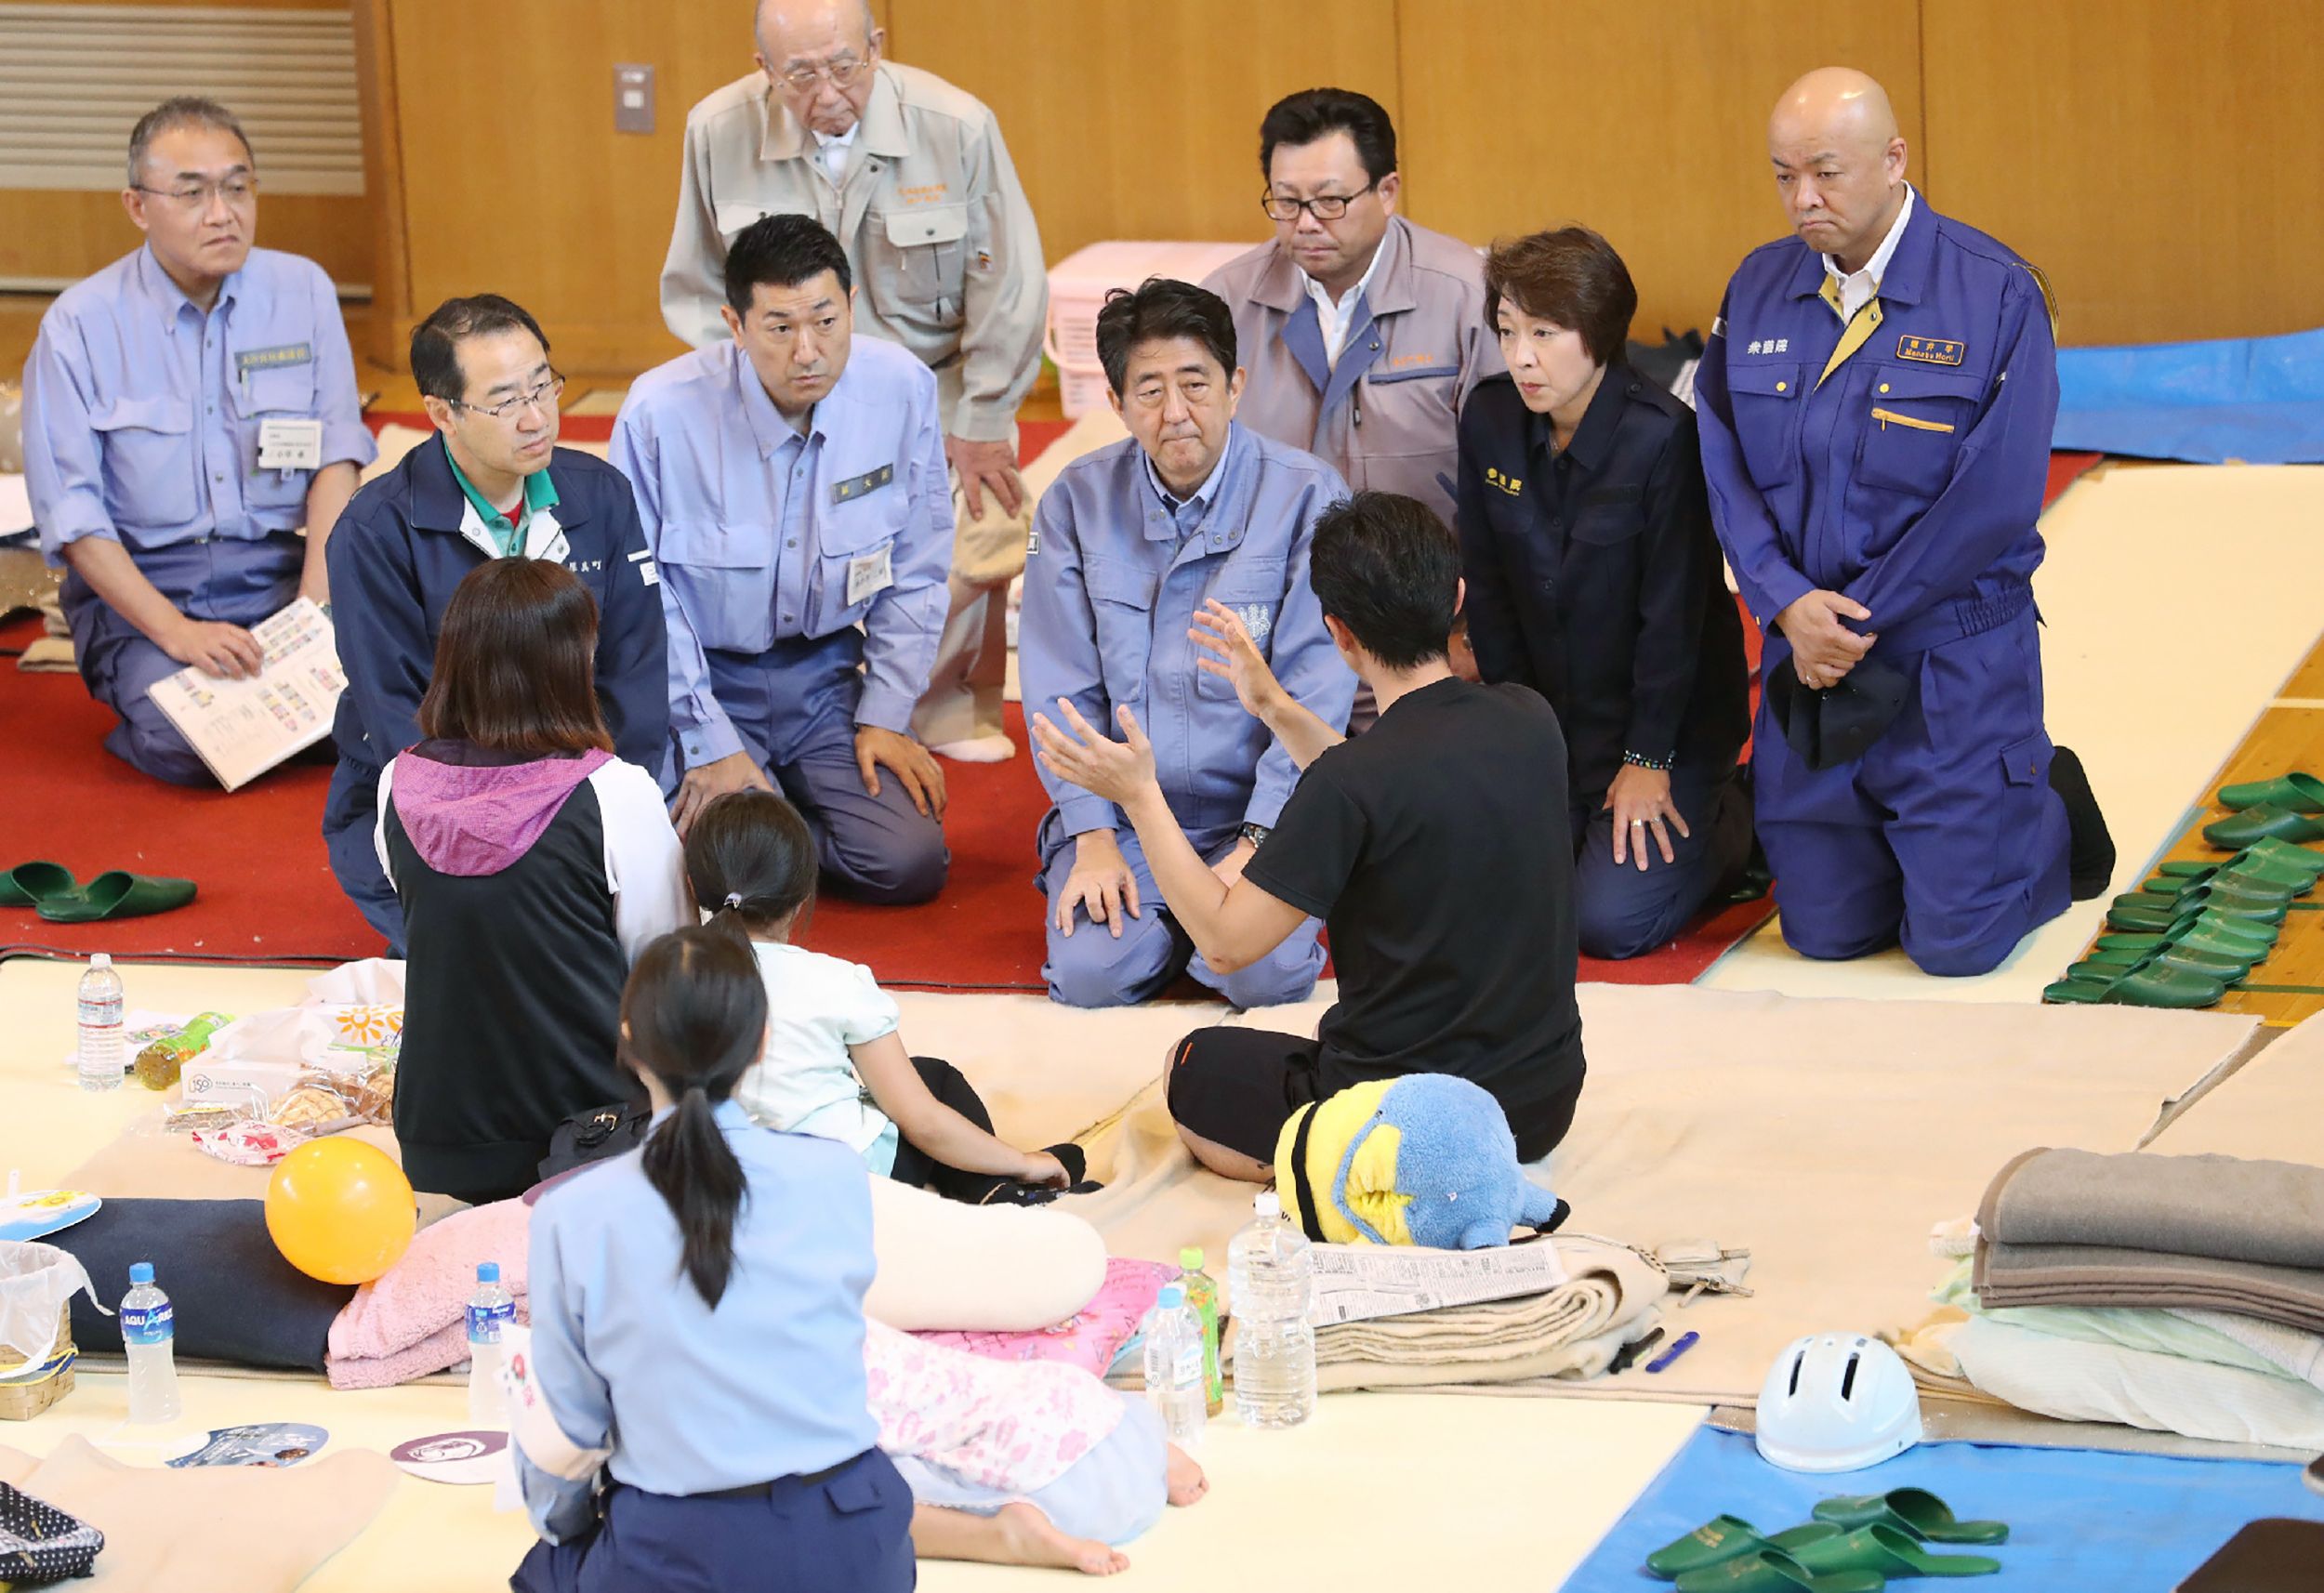 أحد الضحايا يشرح لرئيس وزراء اليابان الأضرار